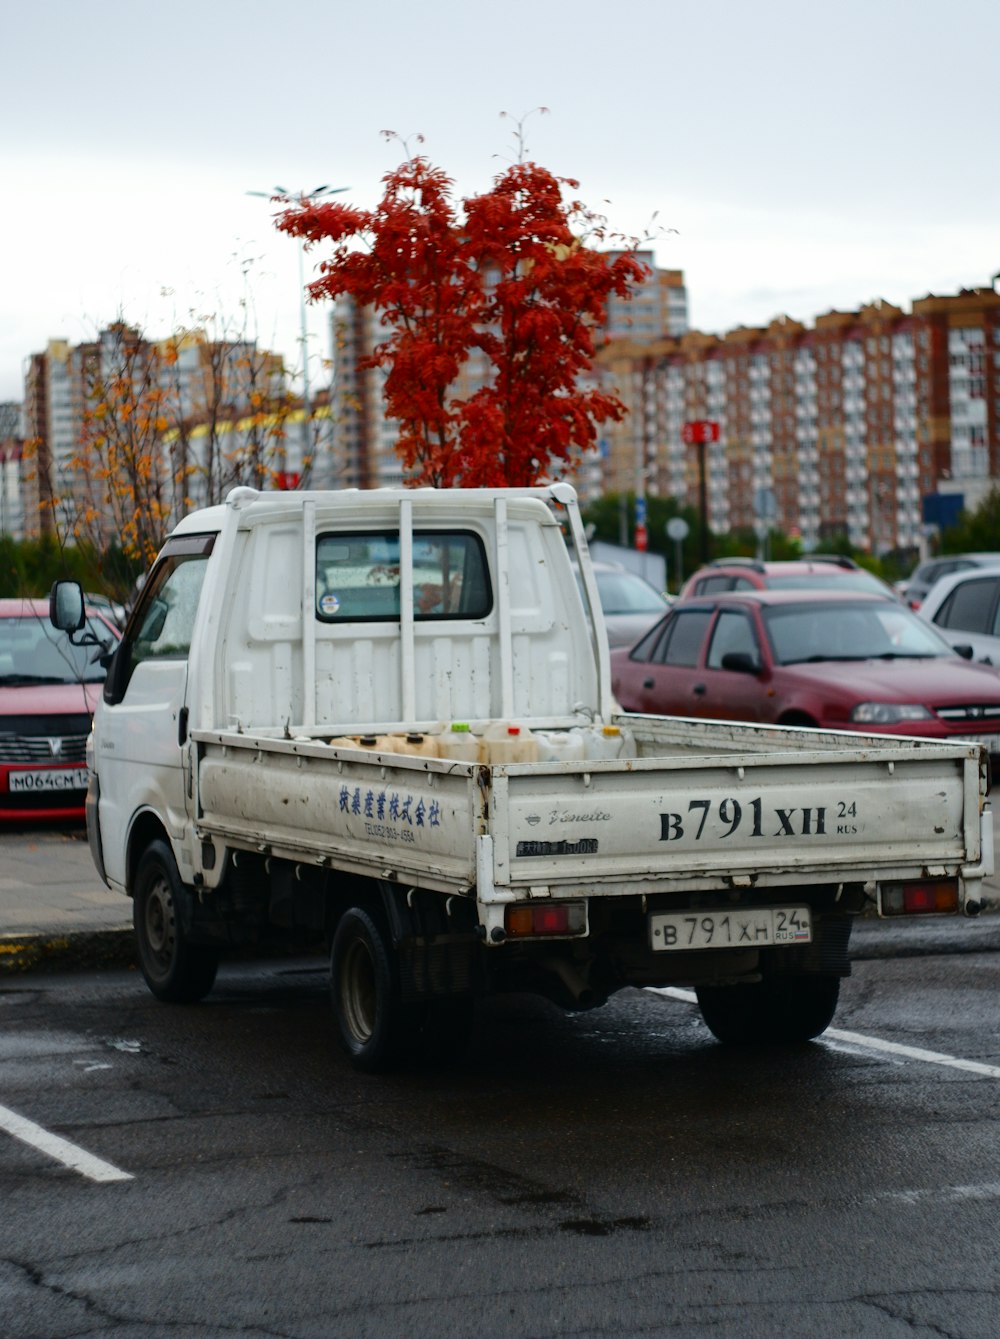 주차장에 주차된 흰색 픽업 트럭